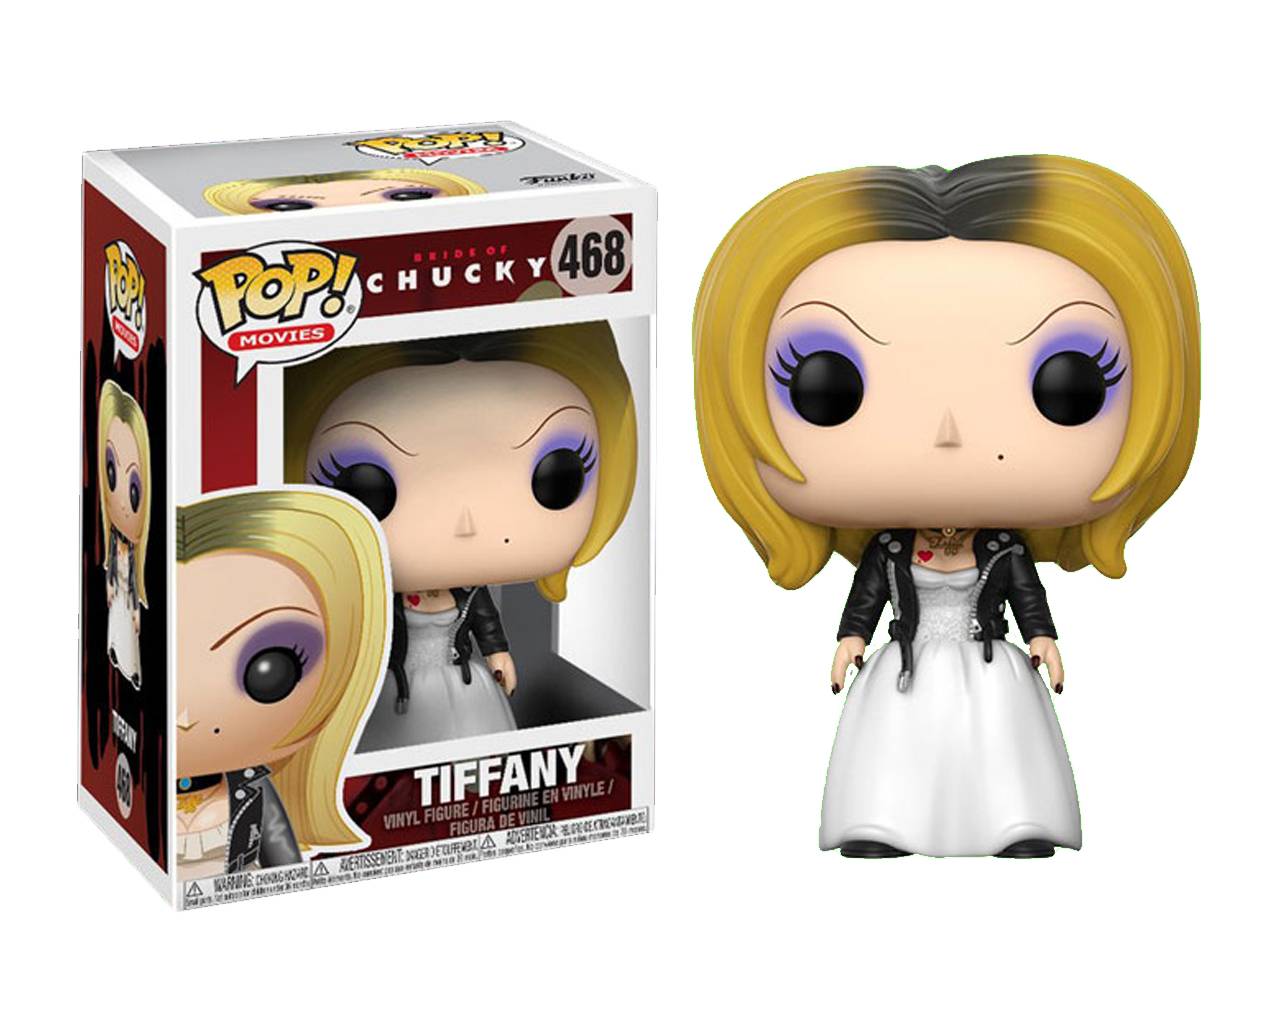 Tiffany - The Bride of Chucky Pop! Vinyl